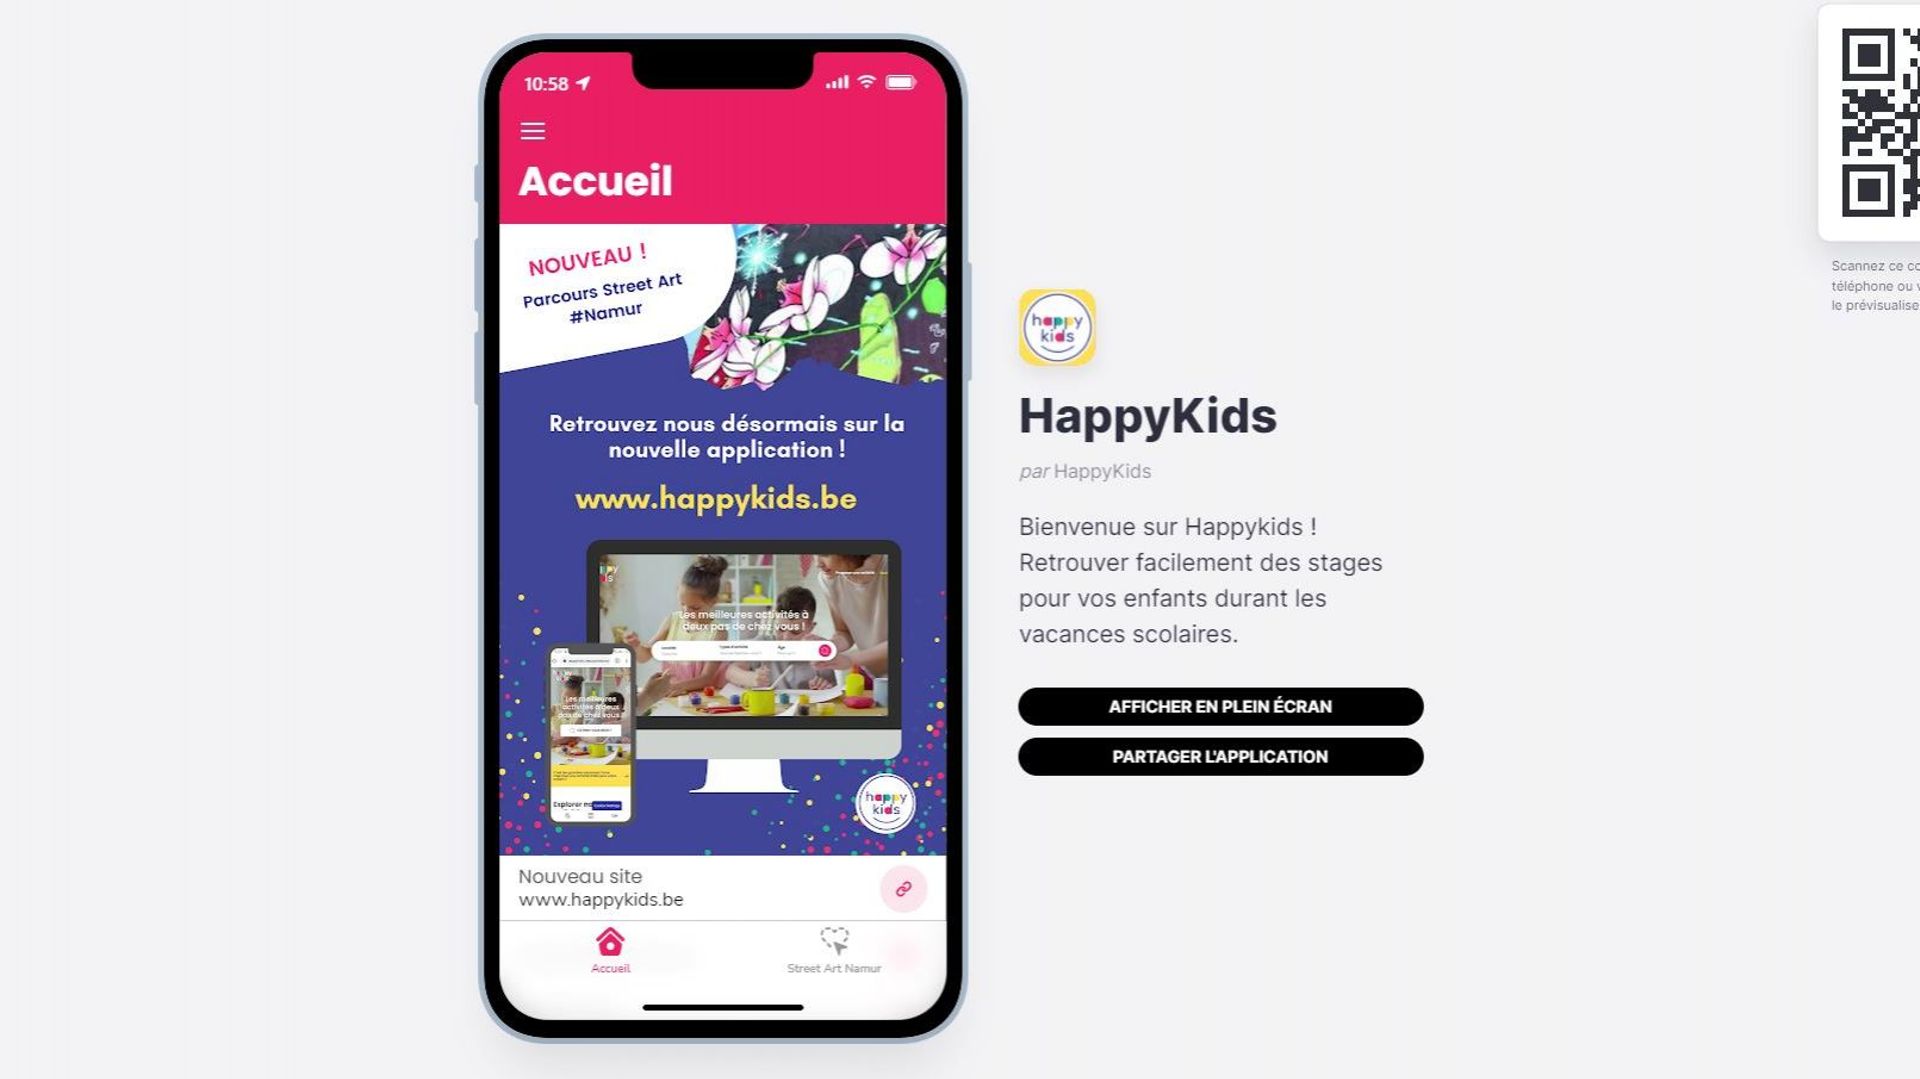 Happy Kids, la plateforme gratuite permettant de trouver des stages pour enfants en quelques clics.